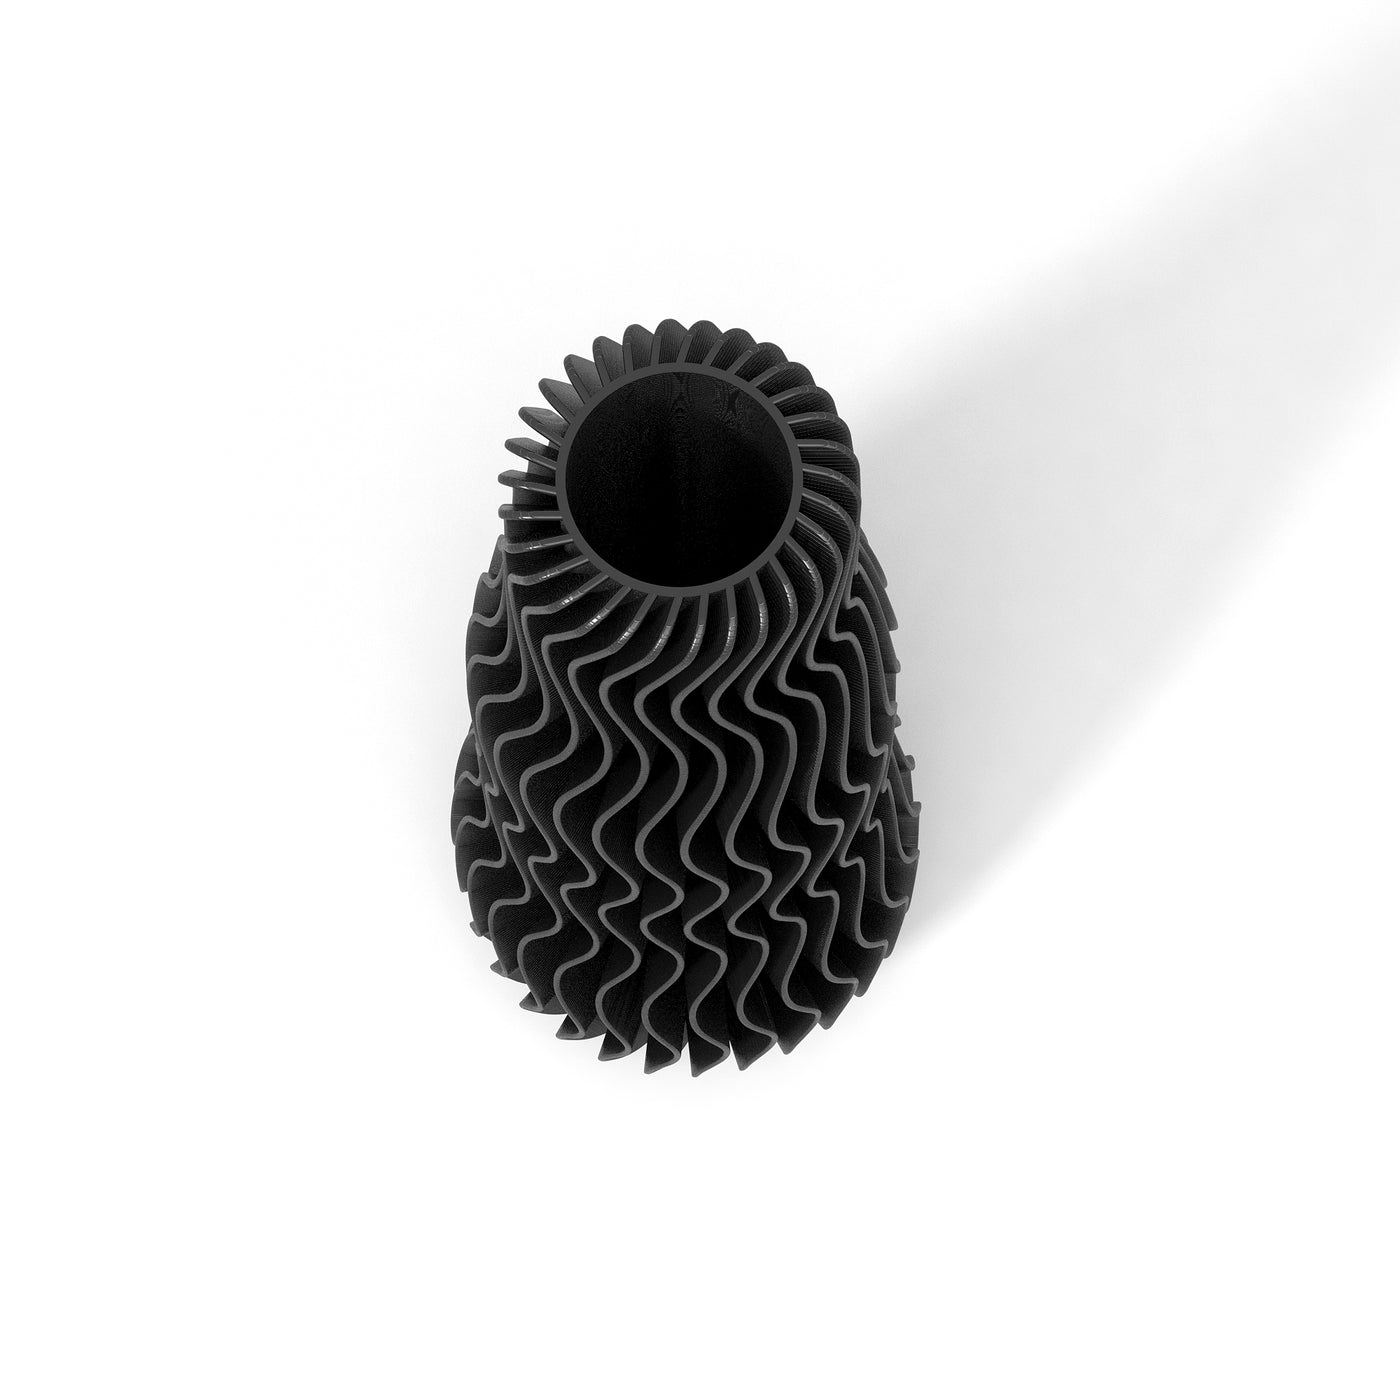 Černá designová váza 3D print WAVE 1 zeshora